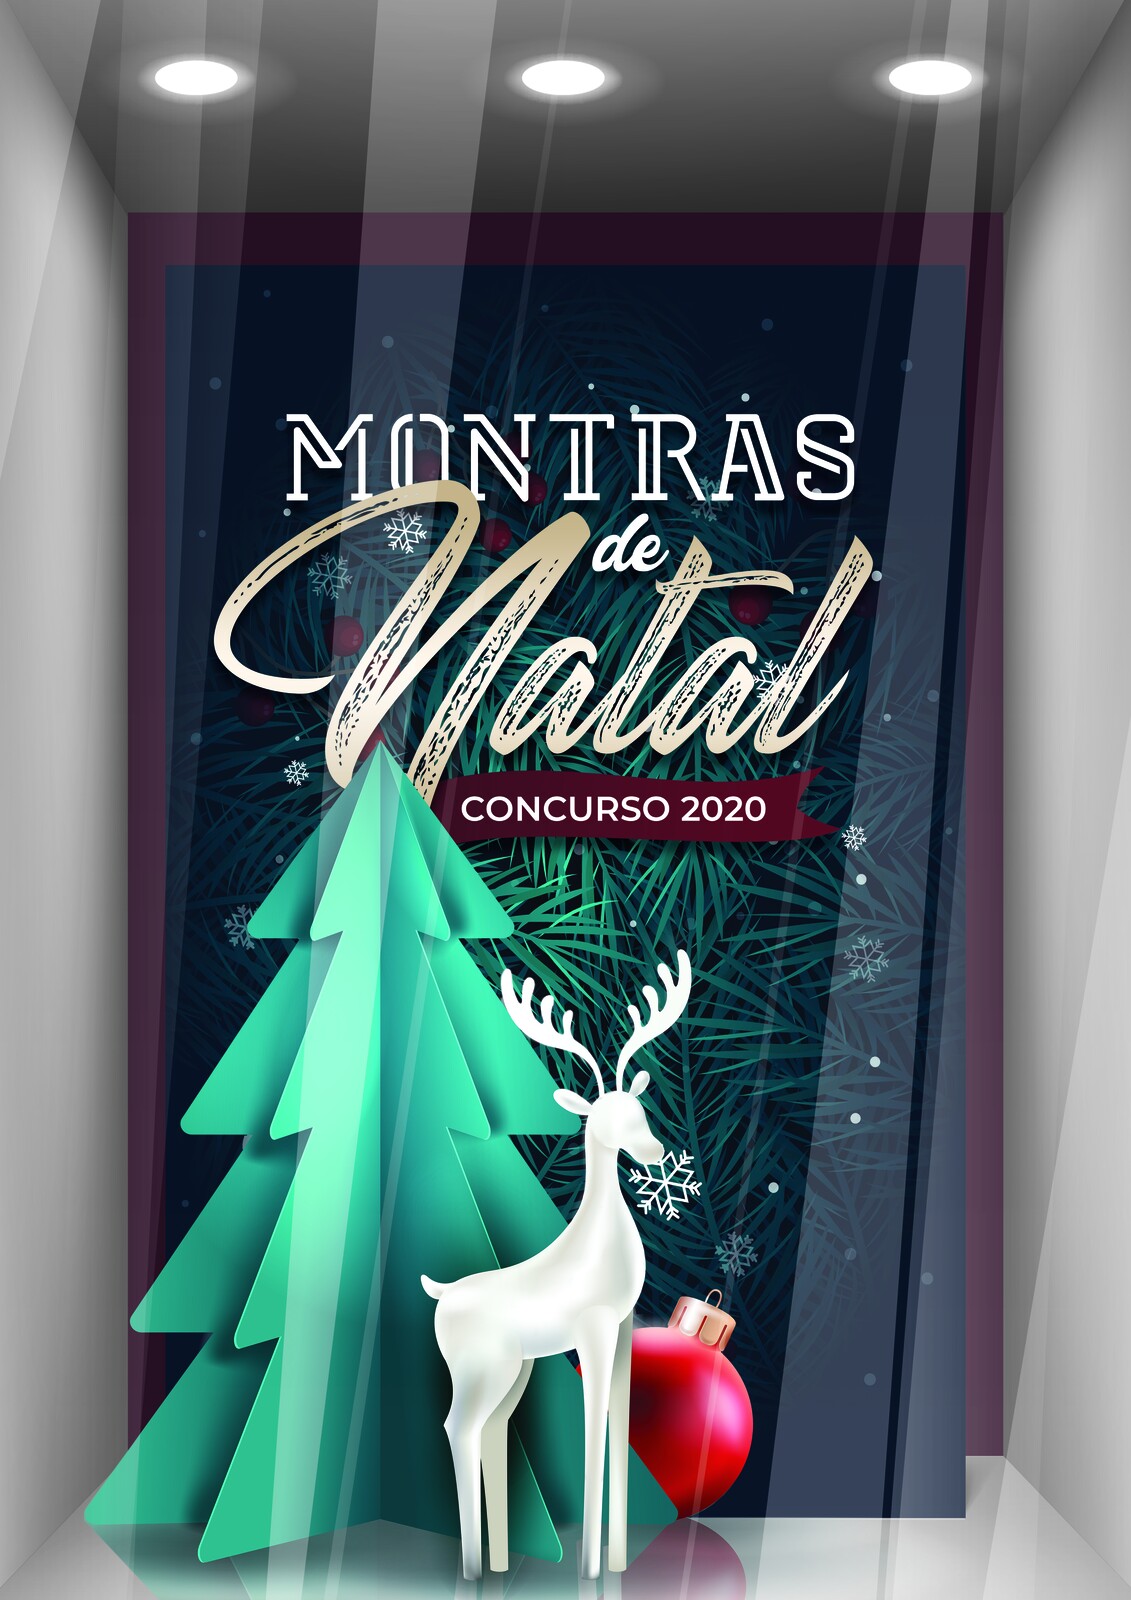 Concurso de Montras de Natal 2020 do Concelho de Bragança